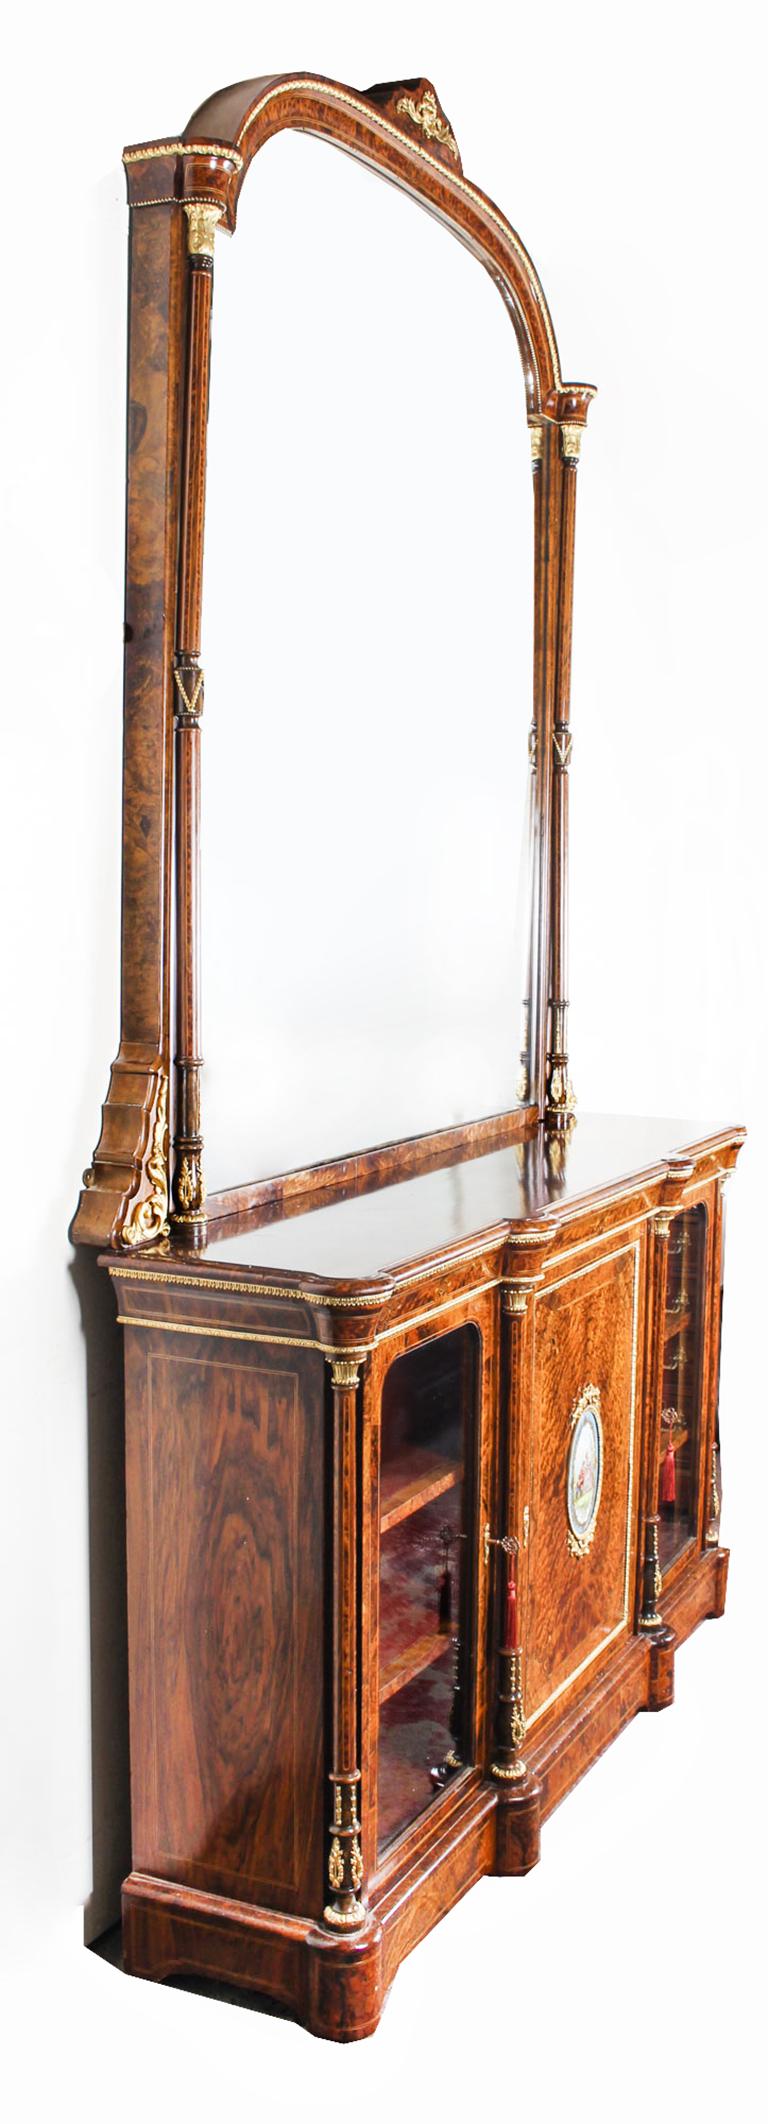 Dies ist eine monumentale feine und seltene antike viktorianische Wurzelnuss und Amboina, Sevres-Porzellan und Ormolu-mounted breakfront Spiegel zurück Kredenz, um 1860 in Datum.
 
Die gut gemaserte Platte aus Wurzelnuss mit perfekt abgestimmten